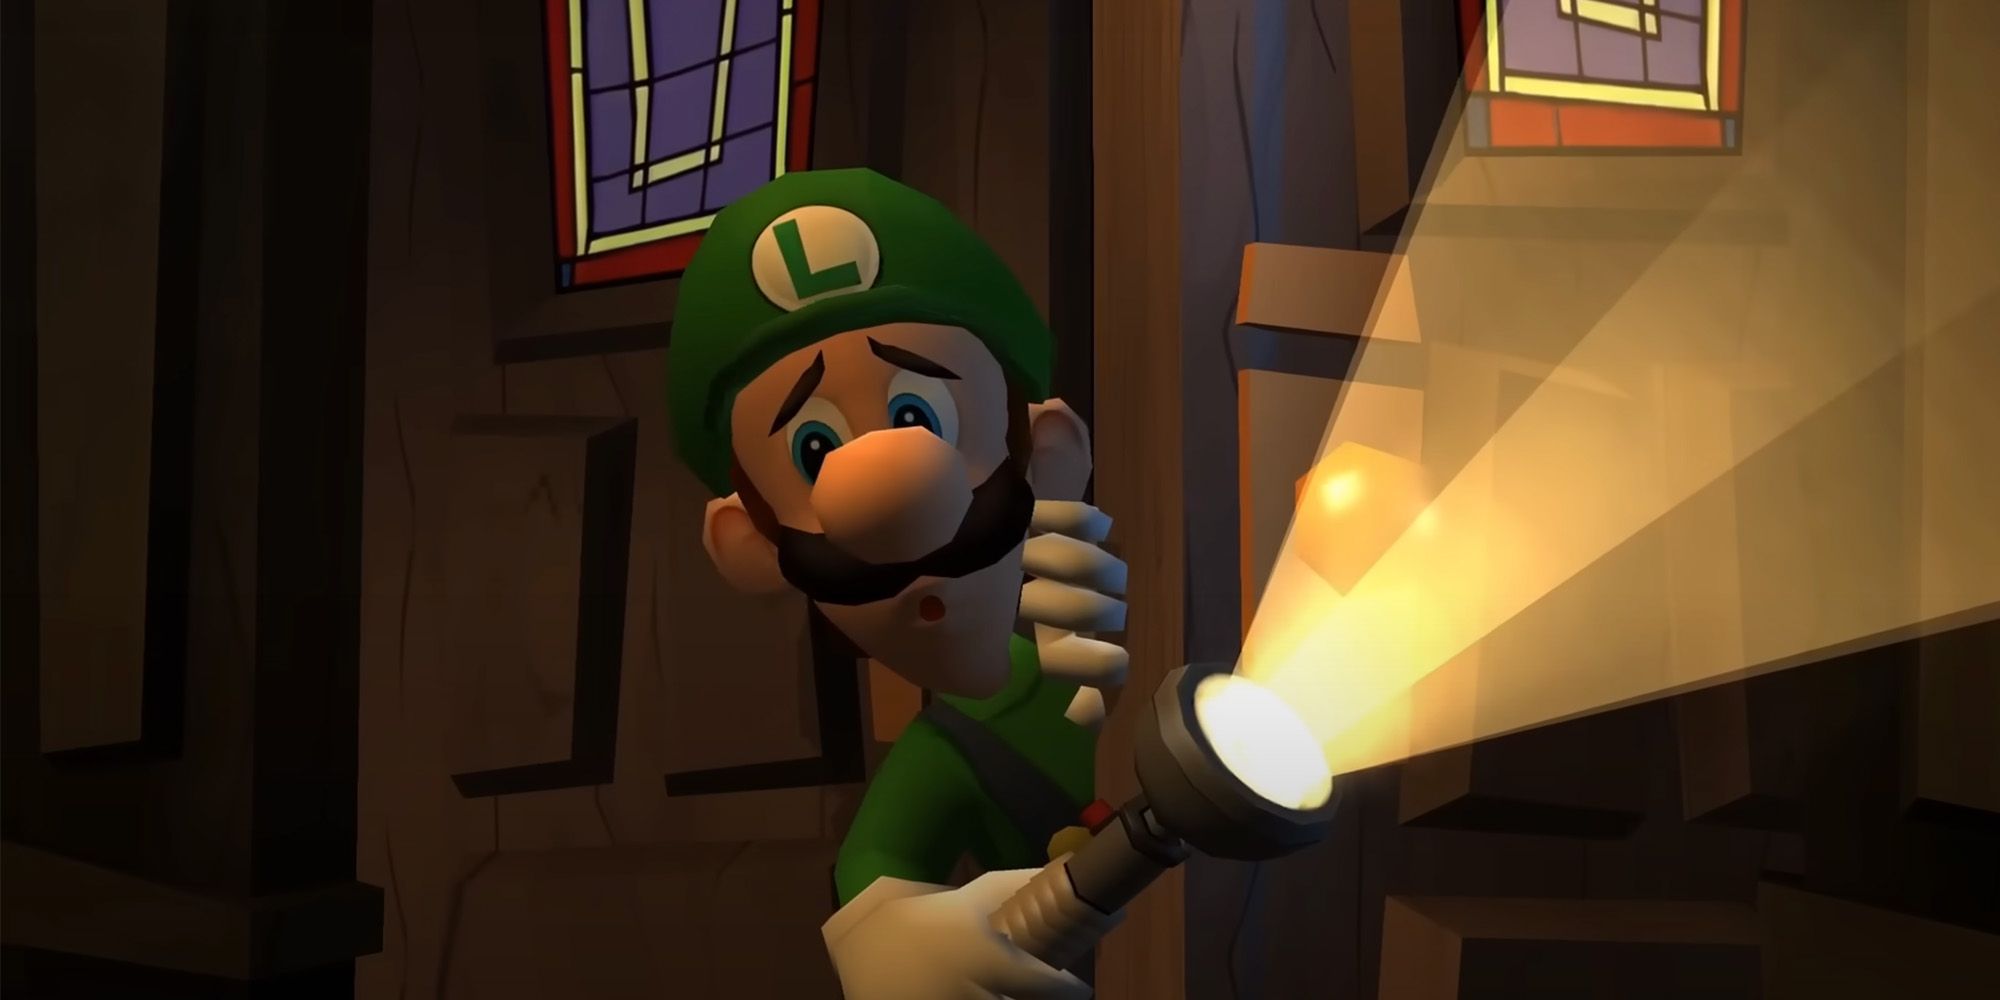 Luigi's Dark Moon Mansion (Luigi's Mansion 2) - Luigi peeks his head into a gloomy mansion